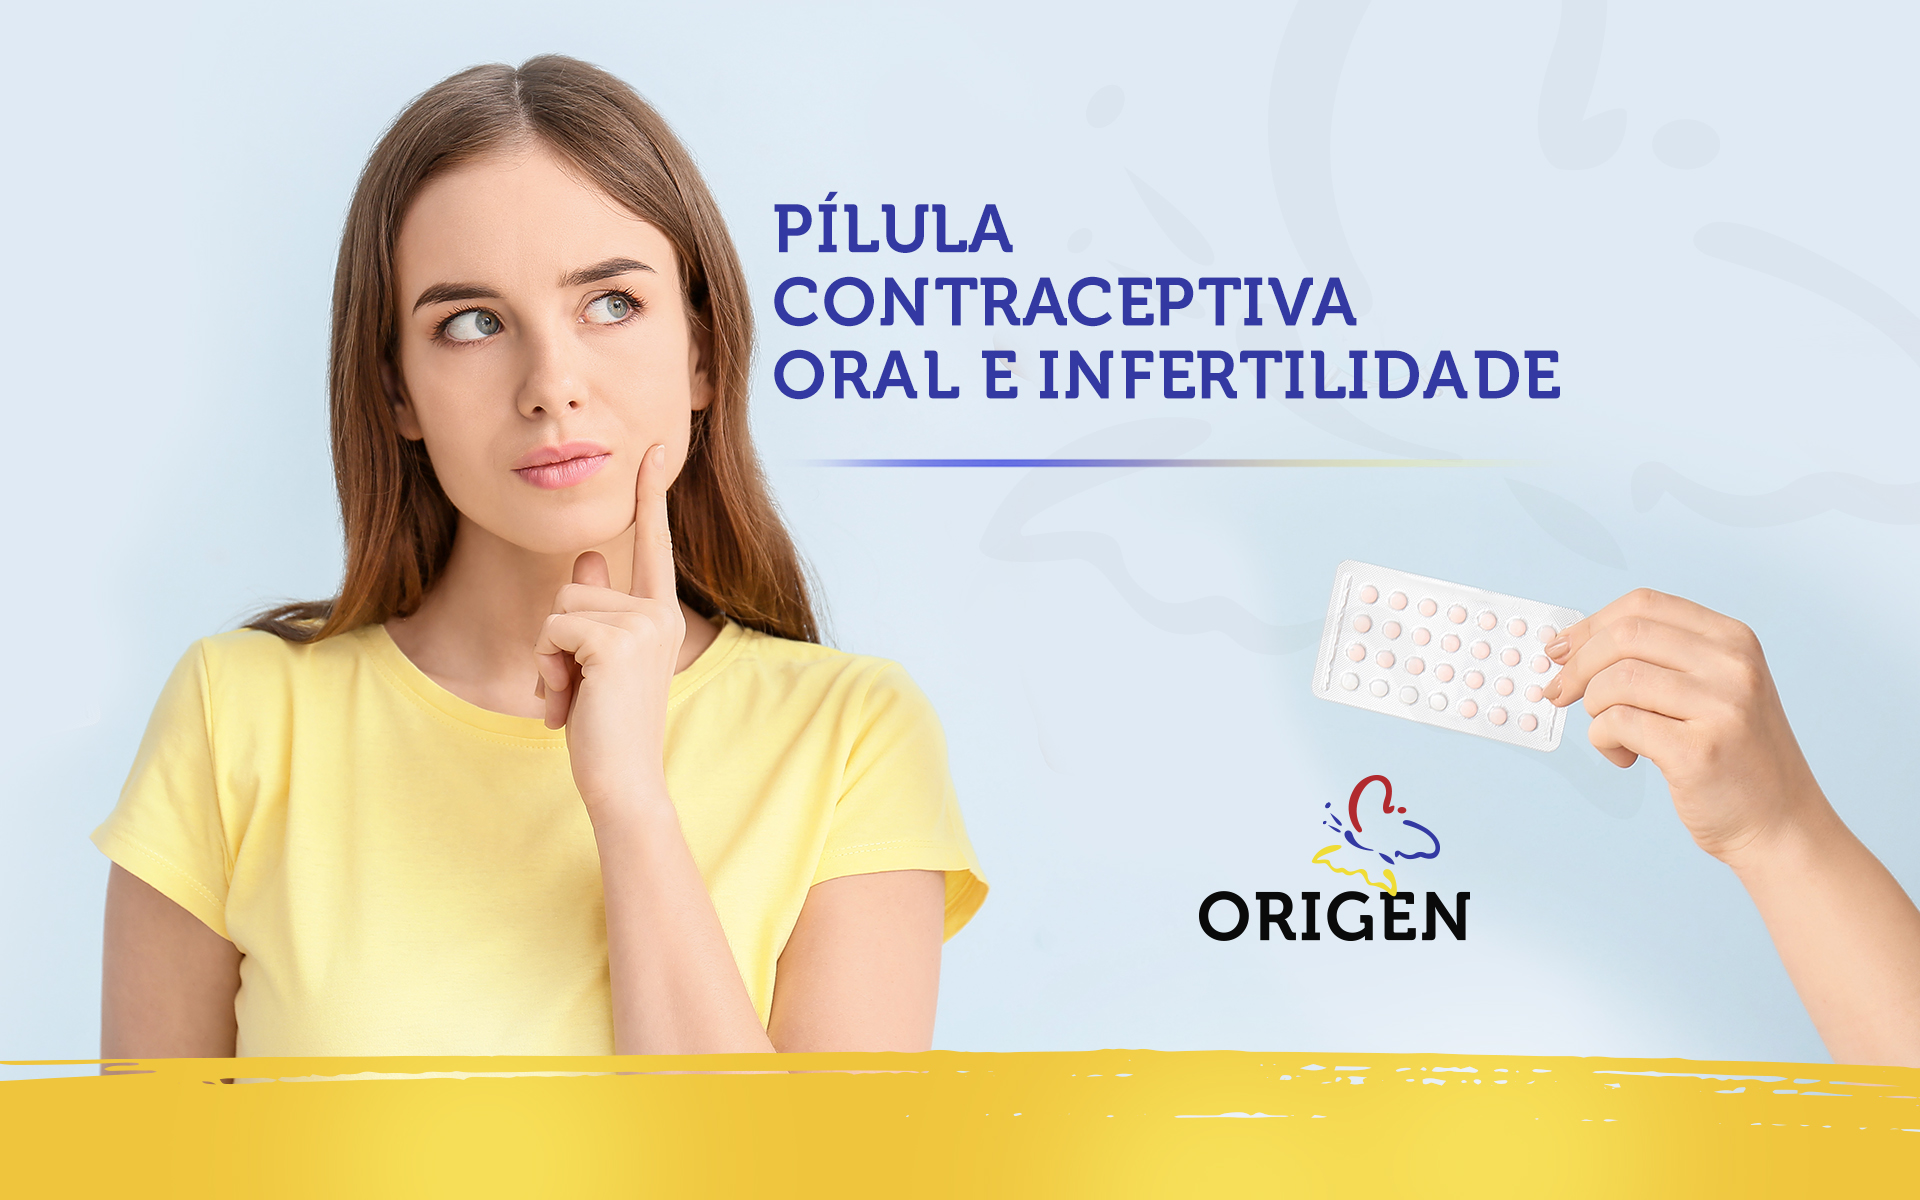 Pílula contraceptiva oral e infertilidade